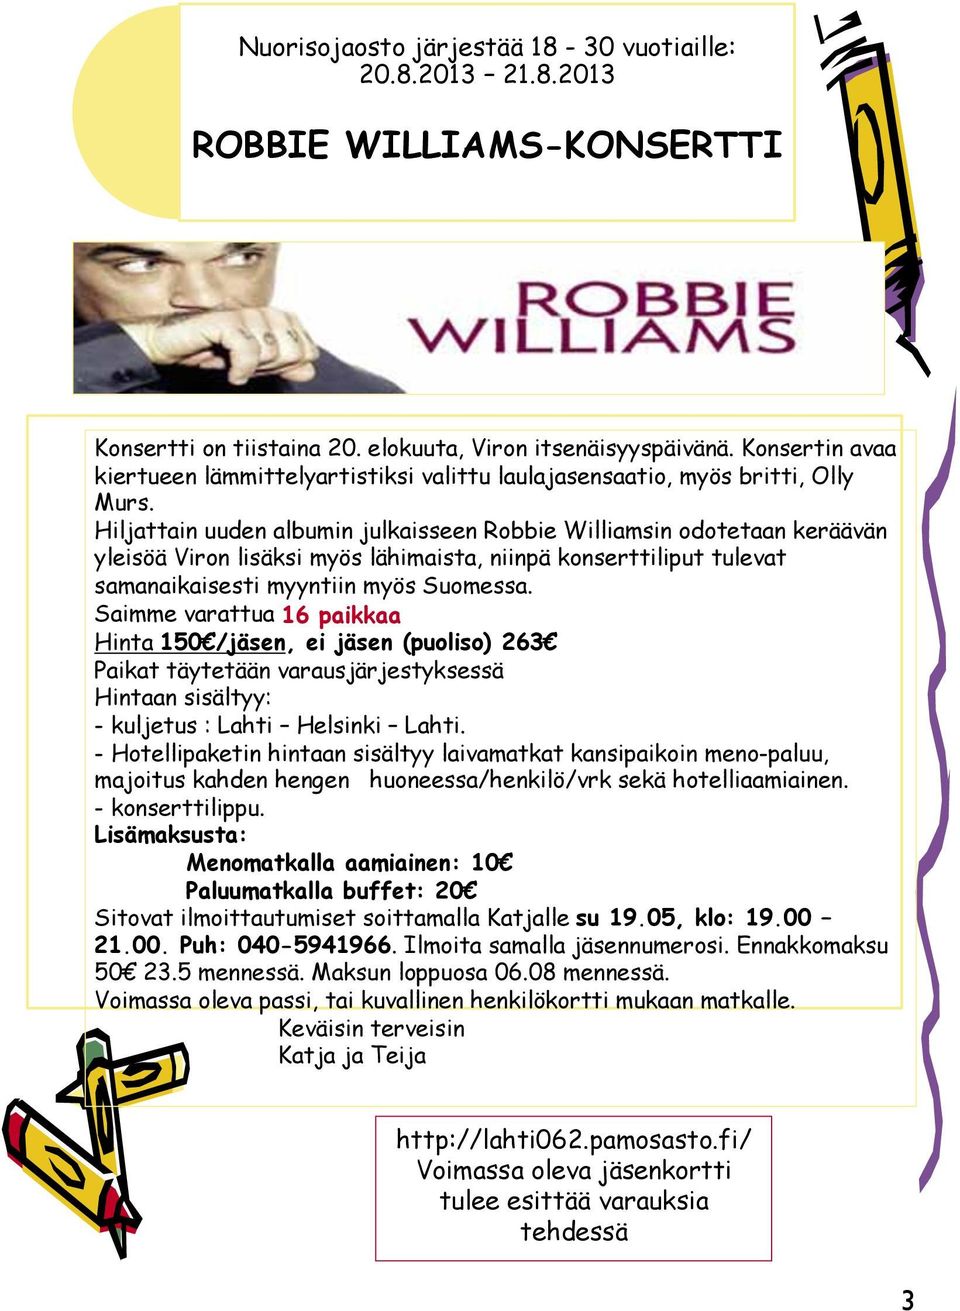 Hiljattain uuden albumin julkaisseen Robbie Williamsin odotetaan keräävän yleisöä Viron lisäksi myös lähimaista, niinpä konserttiliput tulevat samanaikaisesti myyntiin myös Suomessa.